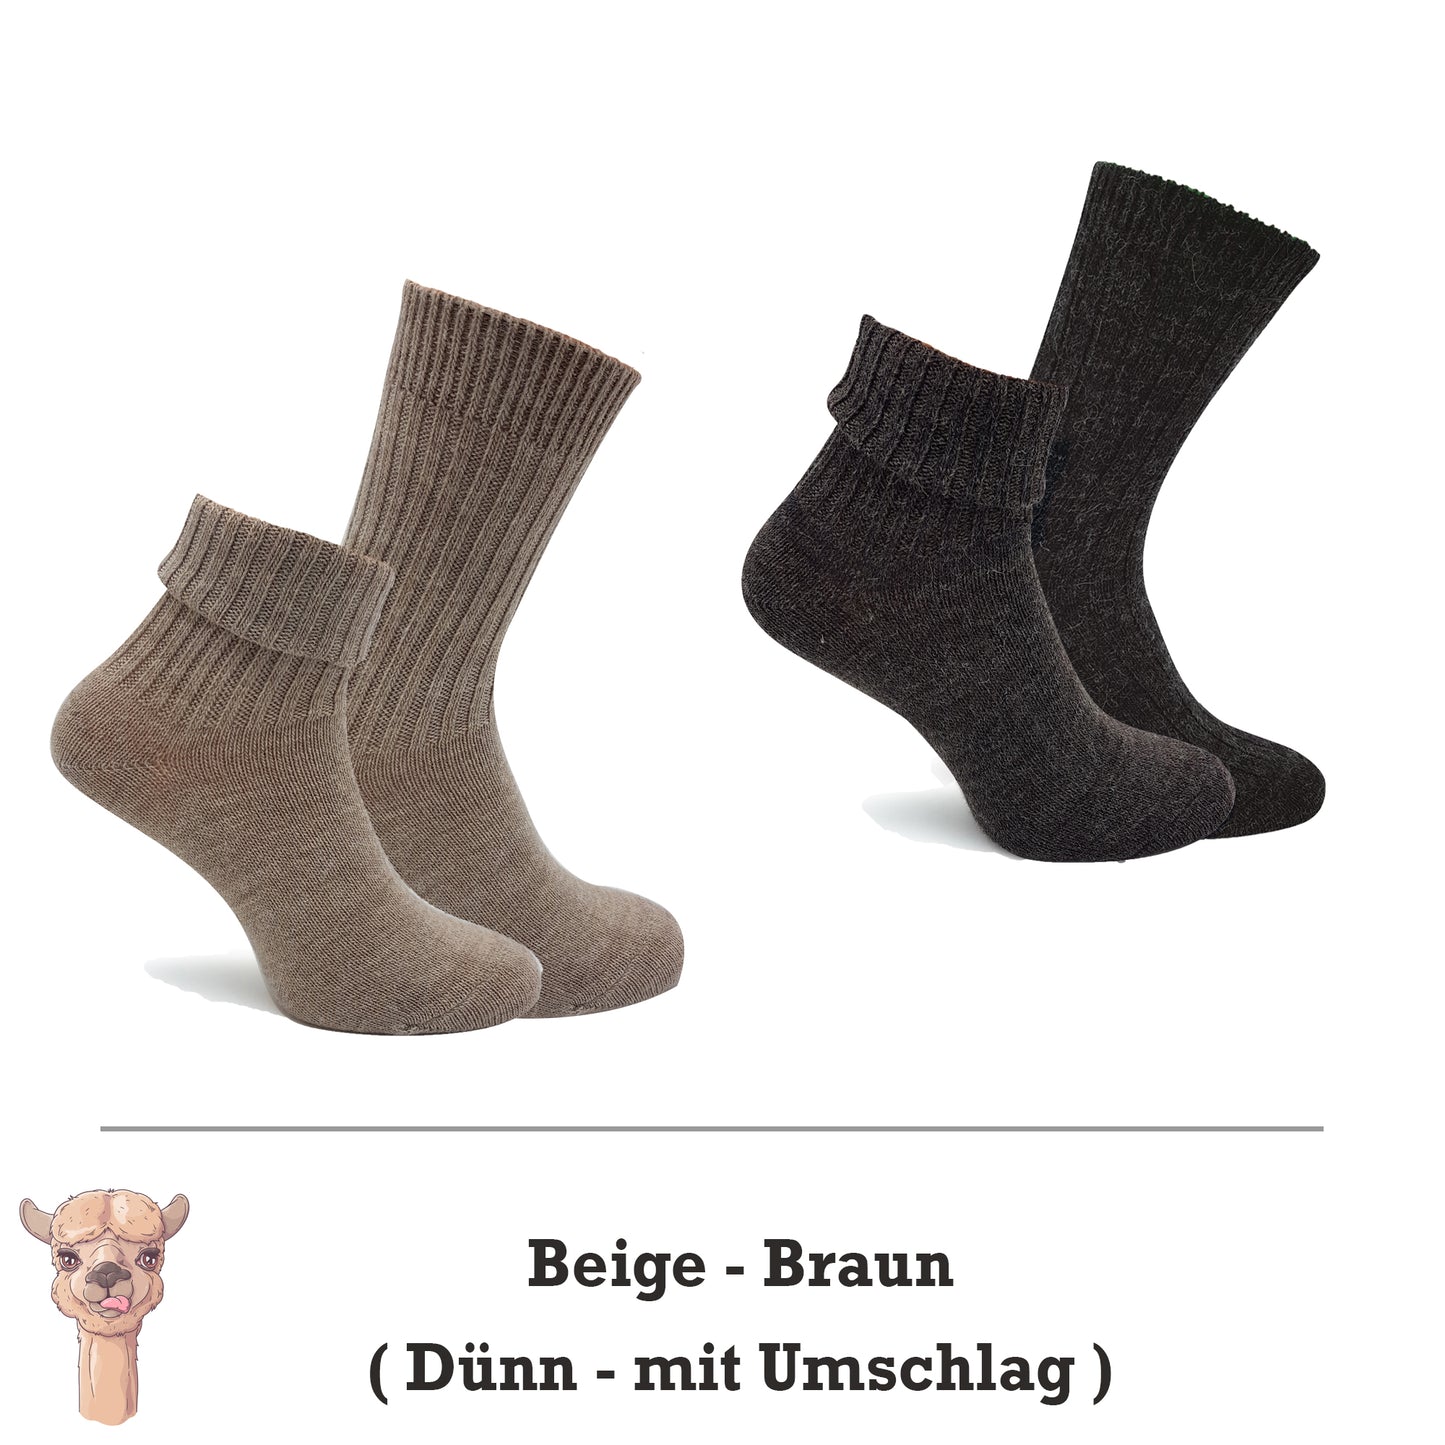 Alpaka Socken, Wollsocken (2 Paar) - Dünn, mit Umschlag (Beige/Braun)